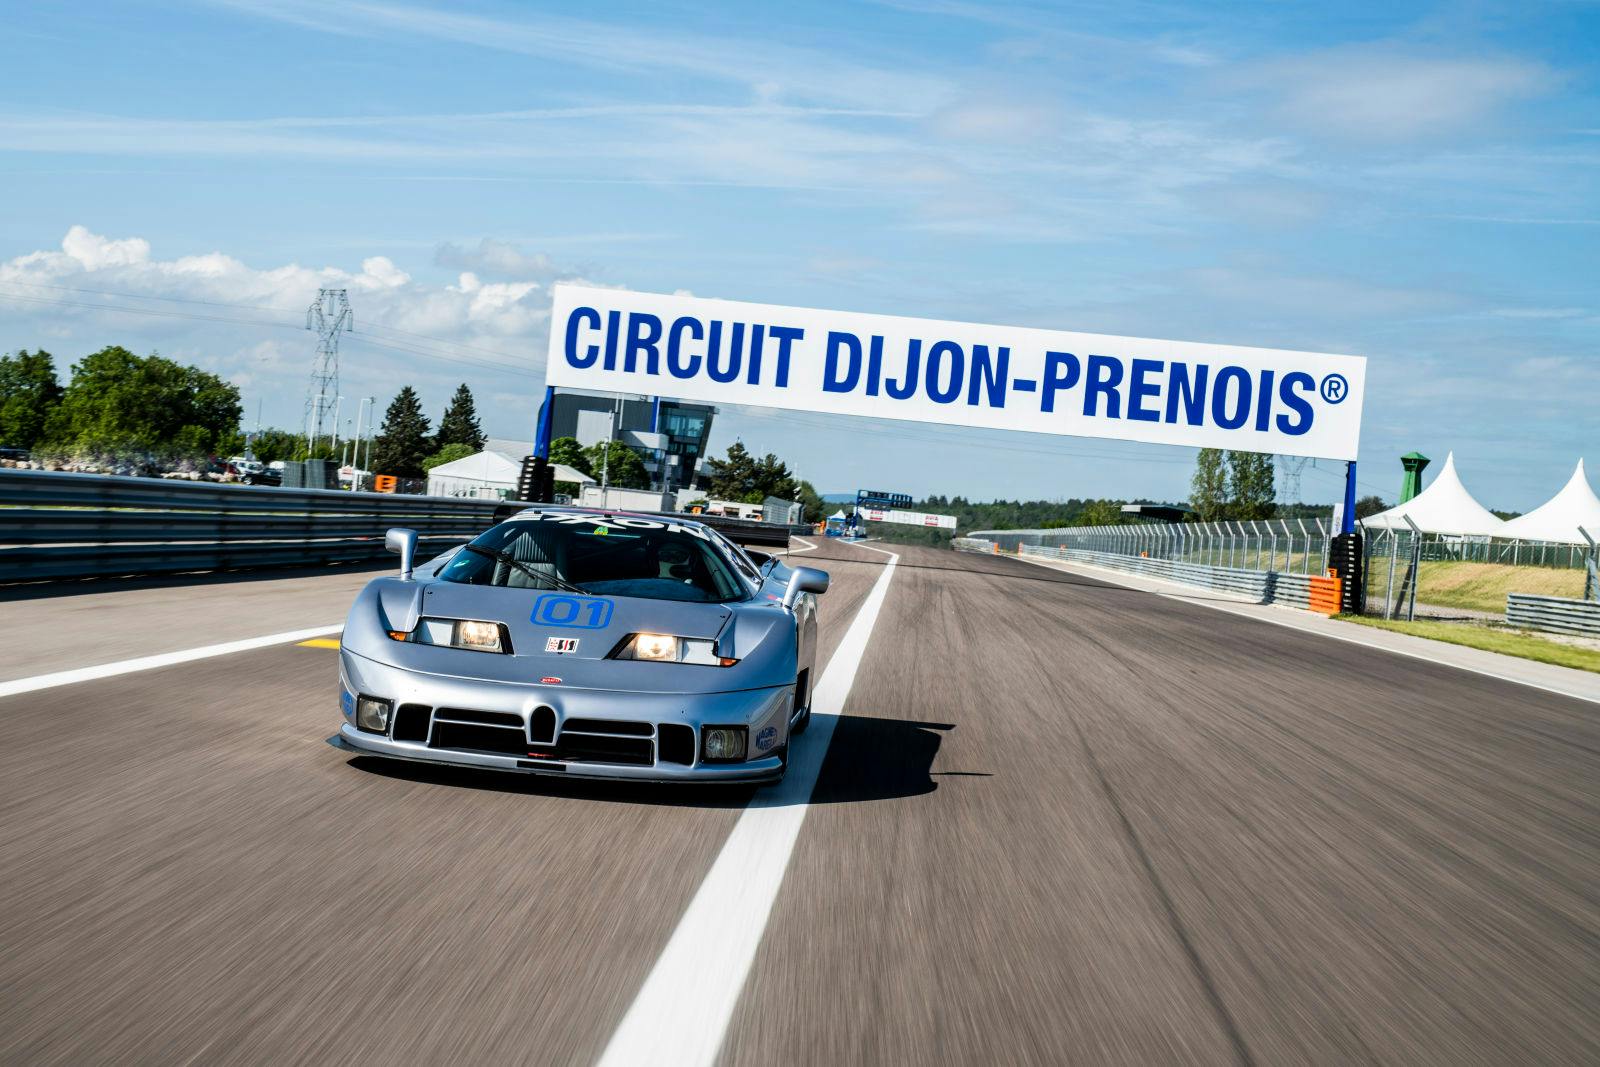 Der Bugatti EB 110 Sport Competizione – nach 25 Jahren zurück auf der Ziellinie in Dijon.